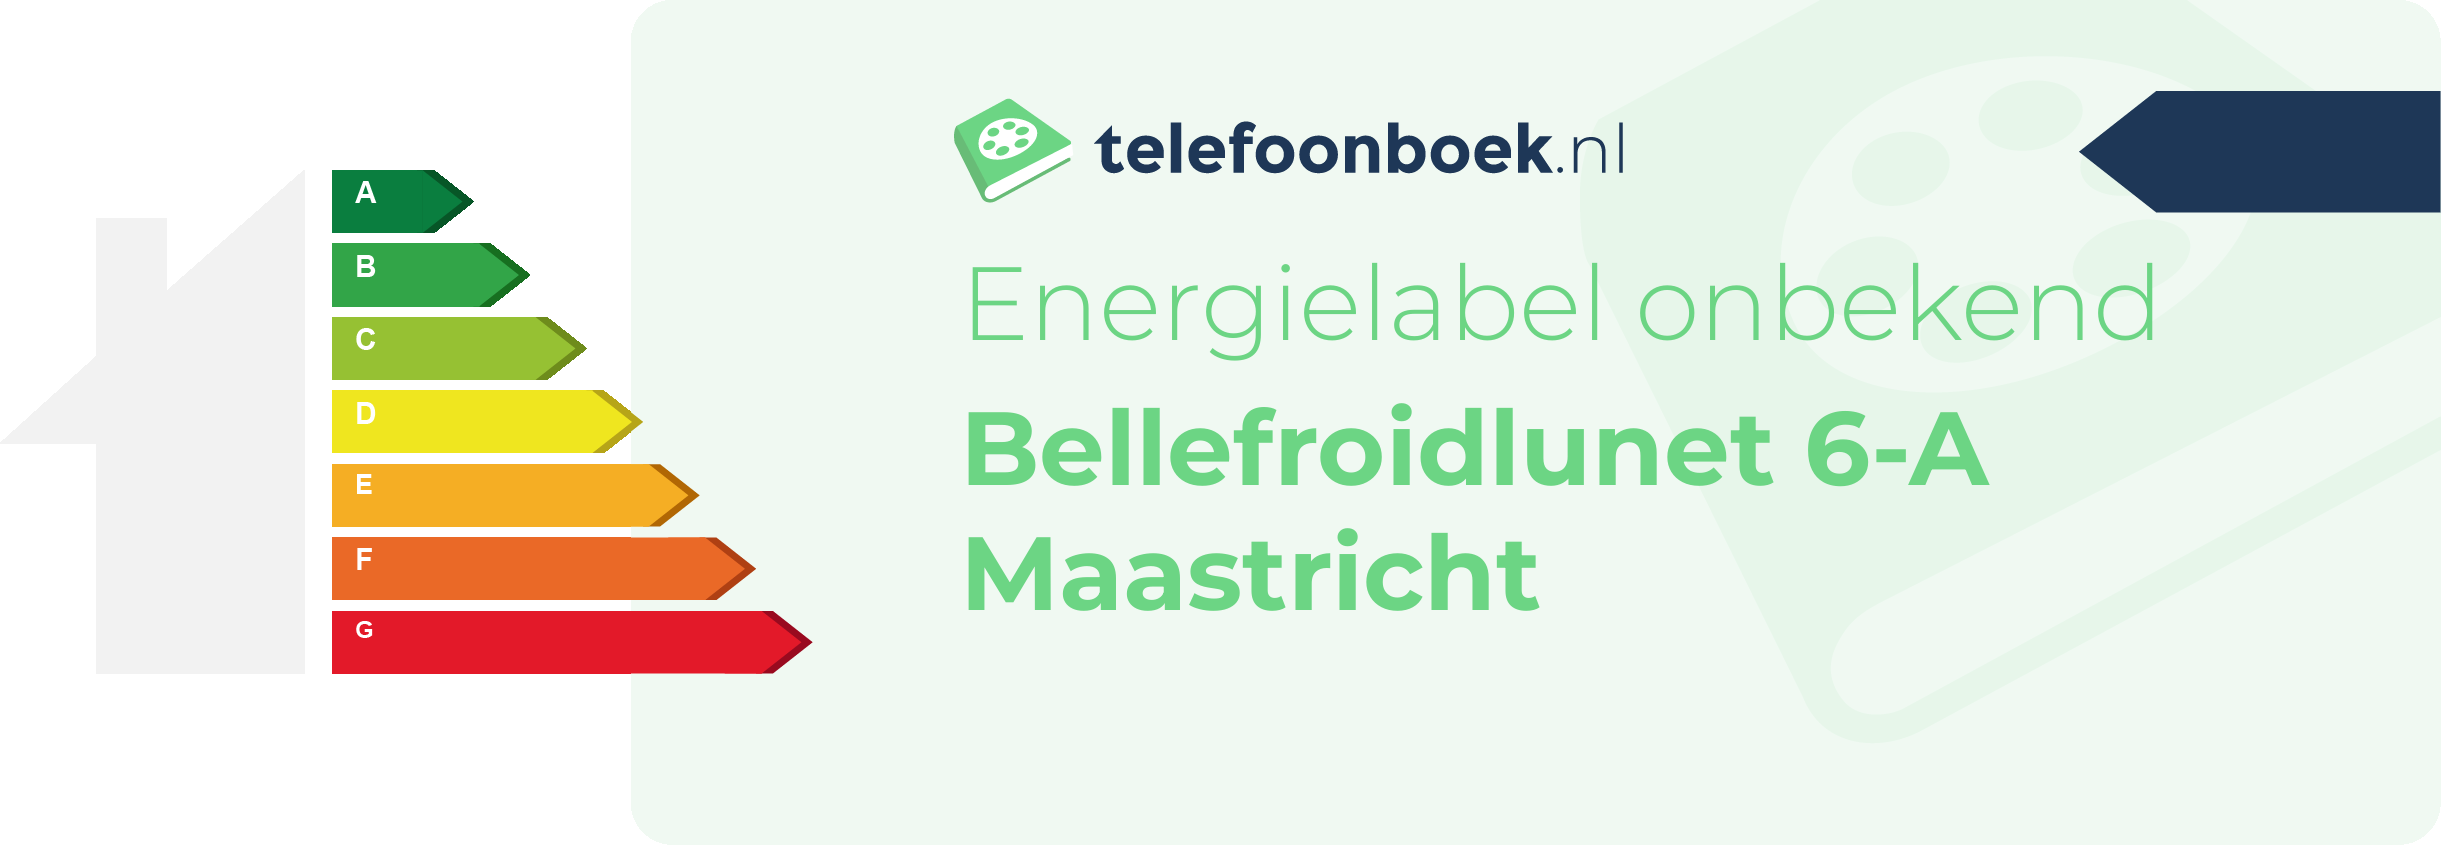 Energielabel Bellefroidlunet 6-A Maastricht